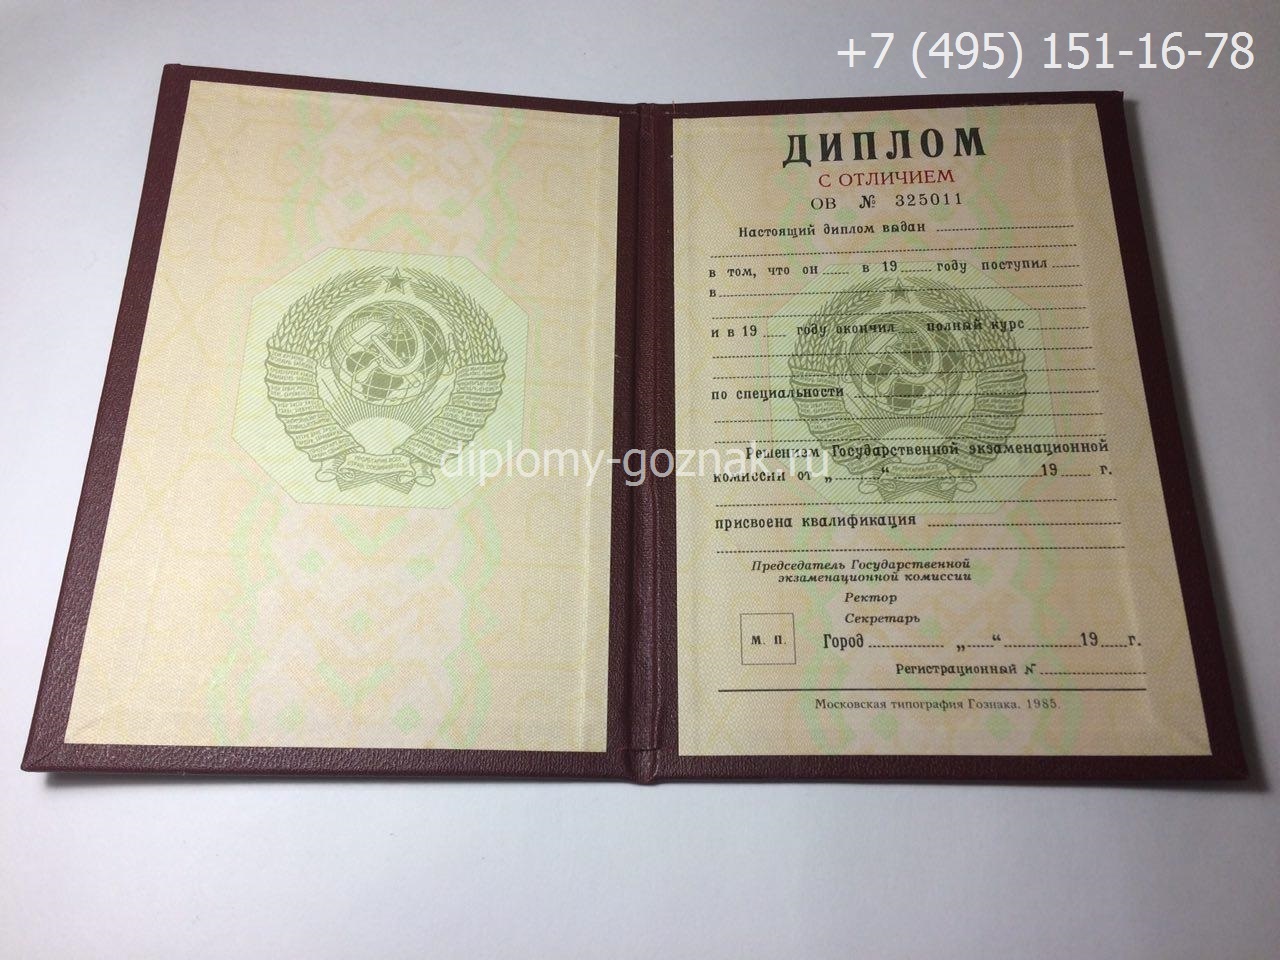 Диплом о высшем образовании СССР с отличием до 1996 года